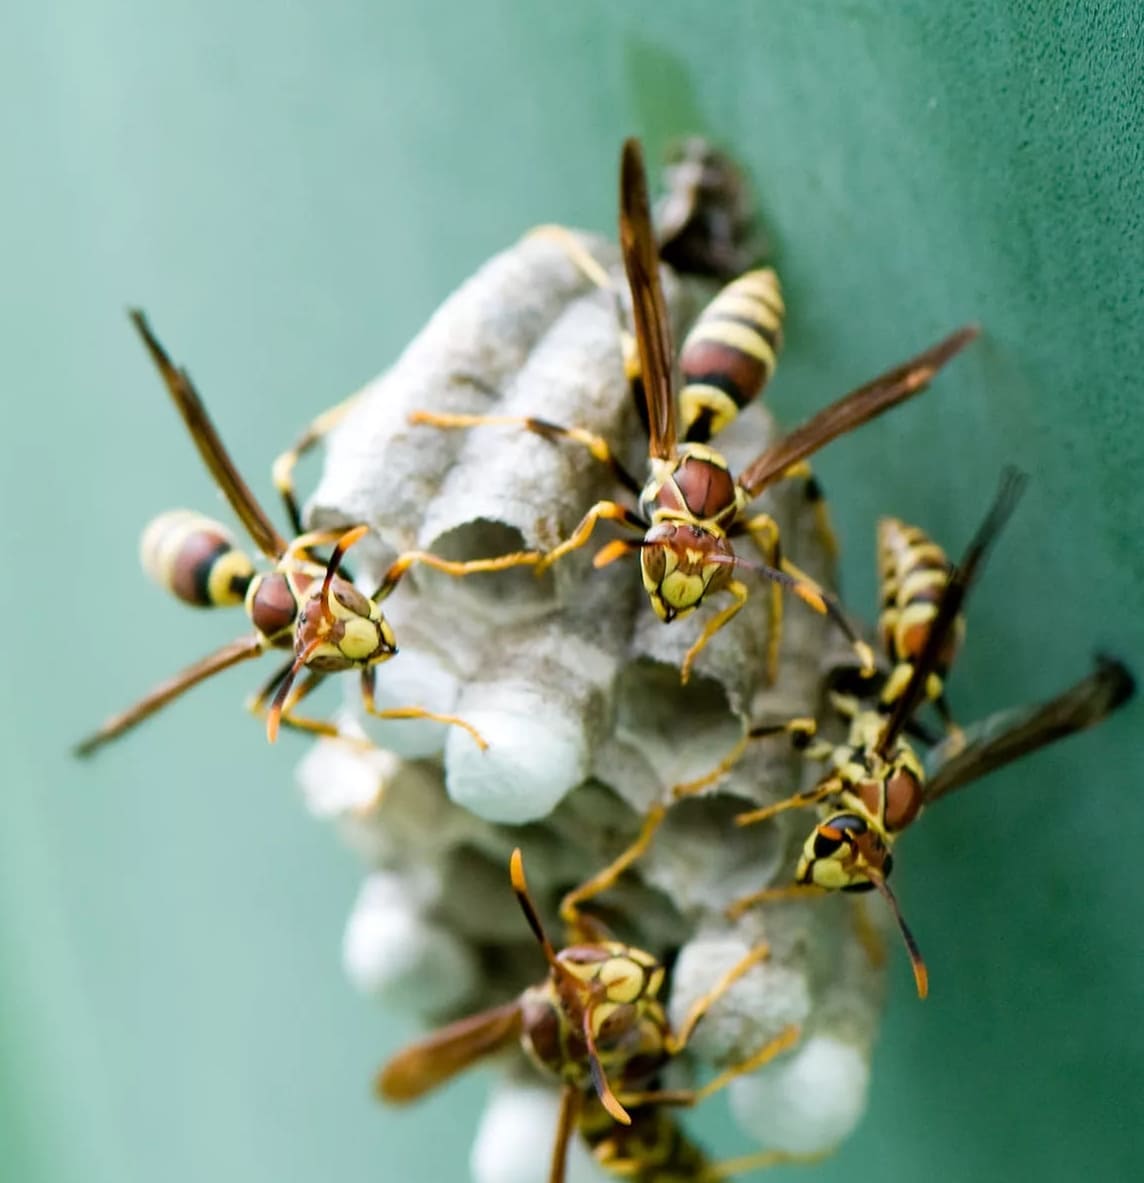 Miten päästä turvallisesti eroon ampiaisista ja Horneteista pihallasi?